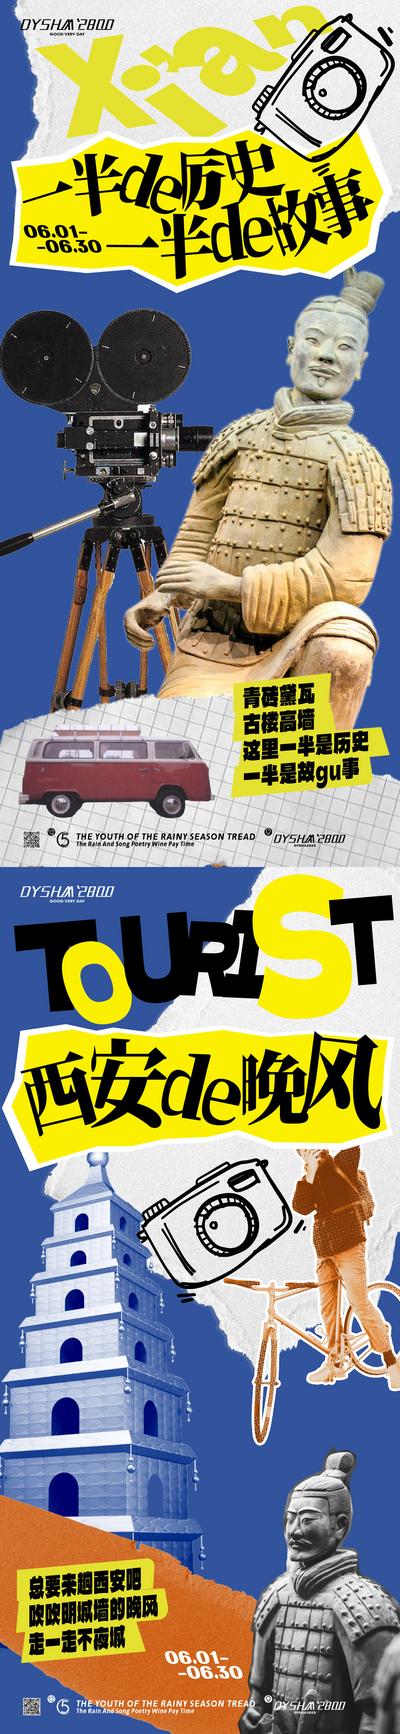 【南门网】广告 海报 文旅 兵马俑 旅游 西安 古董 旅行 拍照 网红城市 系列